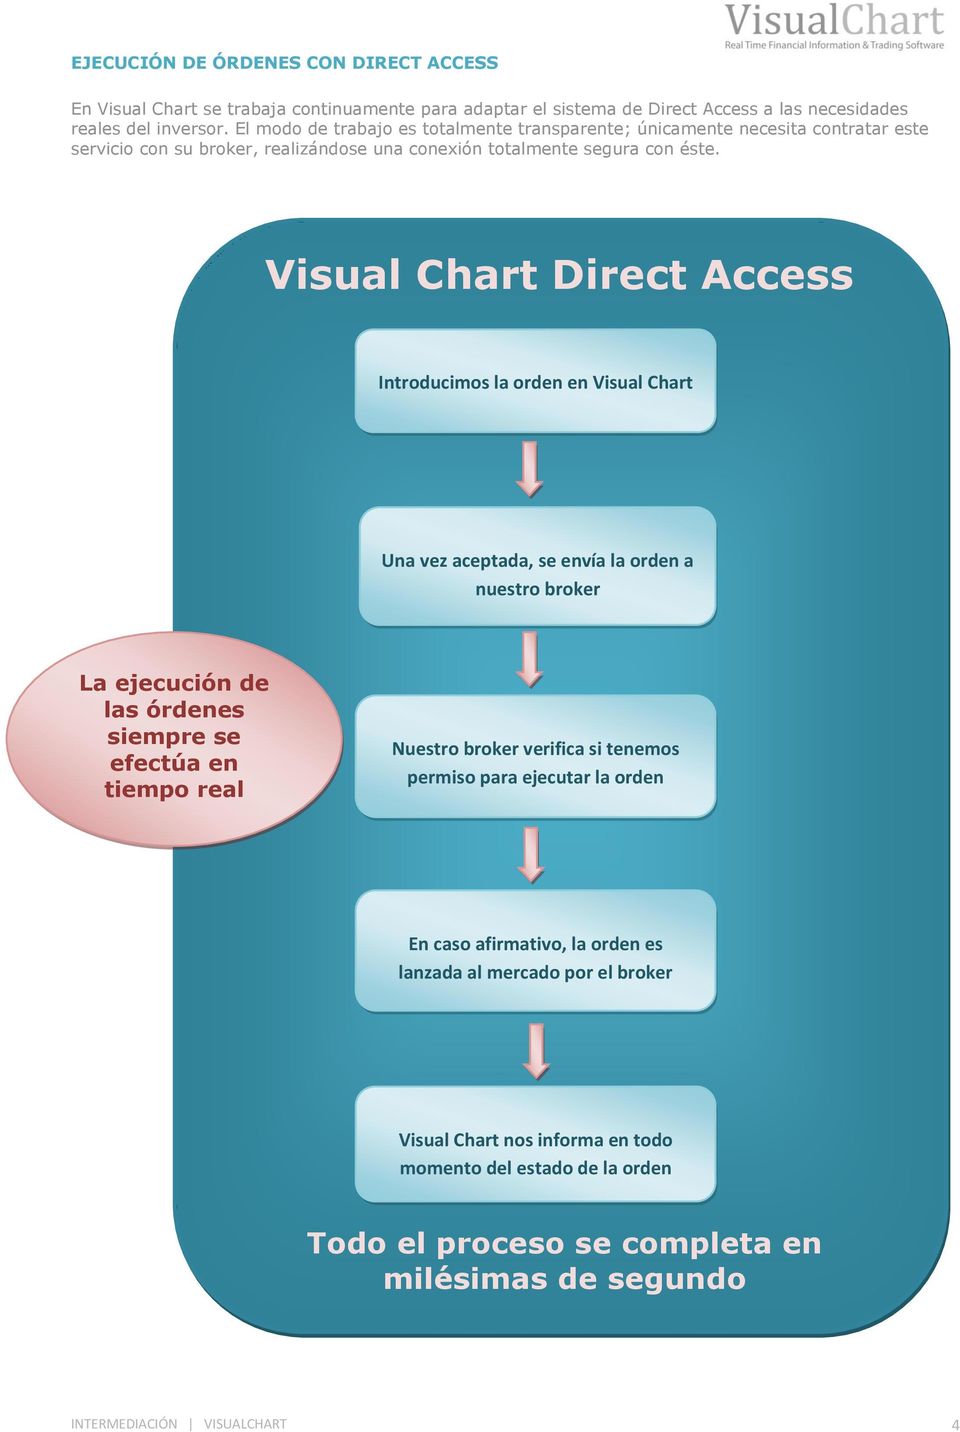 Visual Chart Direct Access Introducimos la orden en Visual Chart Una vez aceptada, se envía la orden a nuestro broker La ejecución de las órdenes siempre se efectúa en tiempo real Nuestro